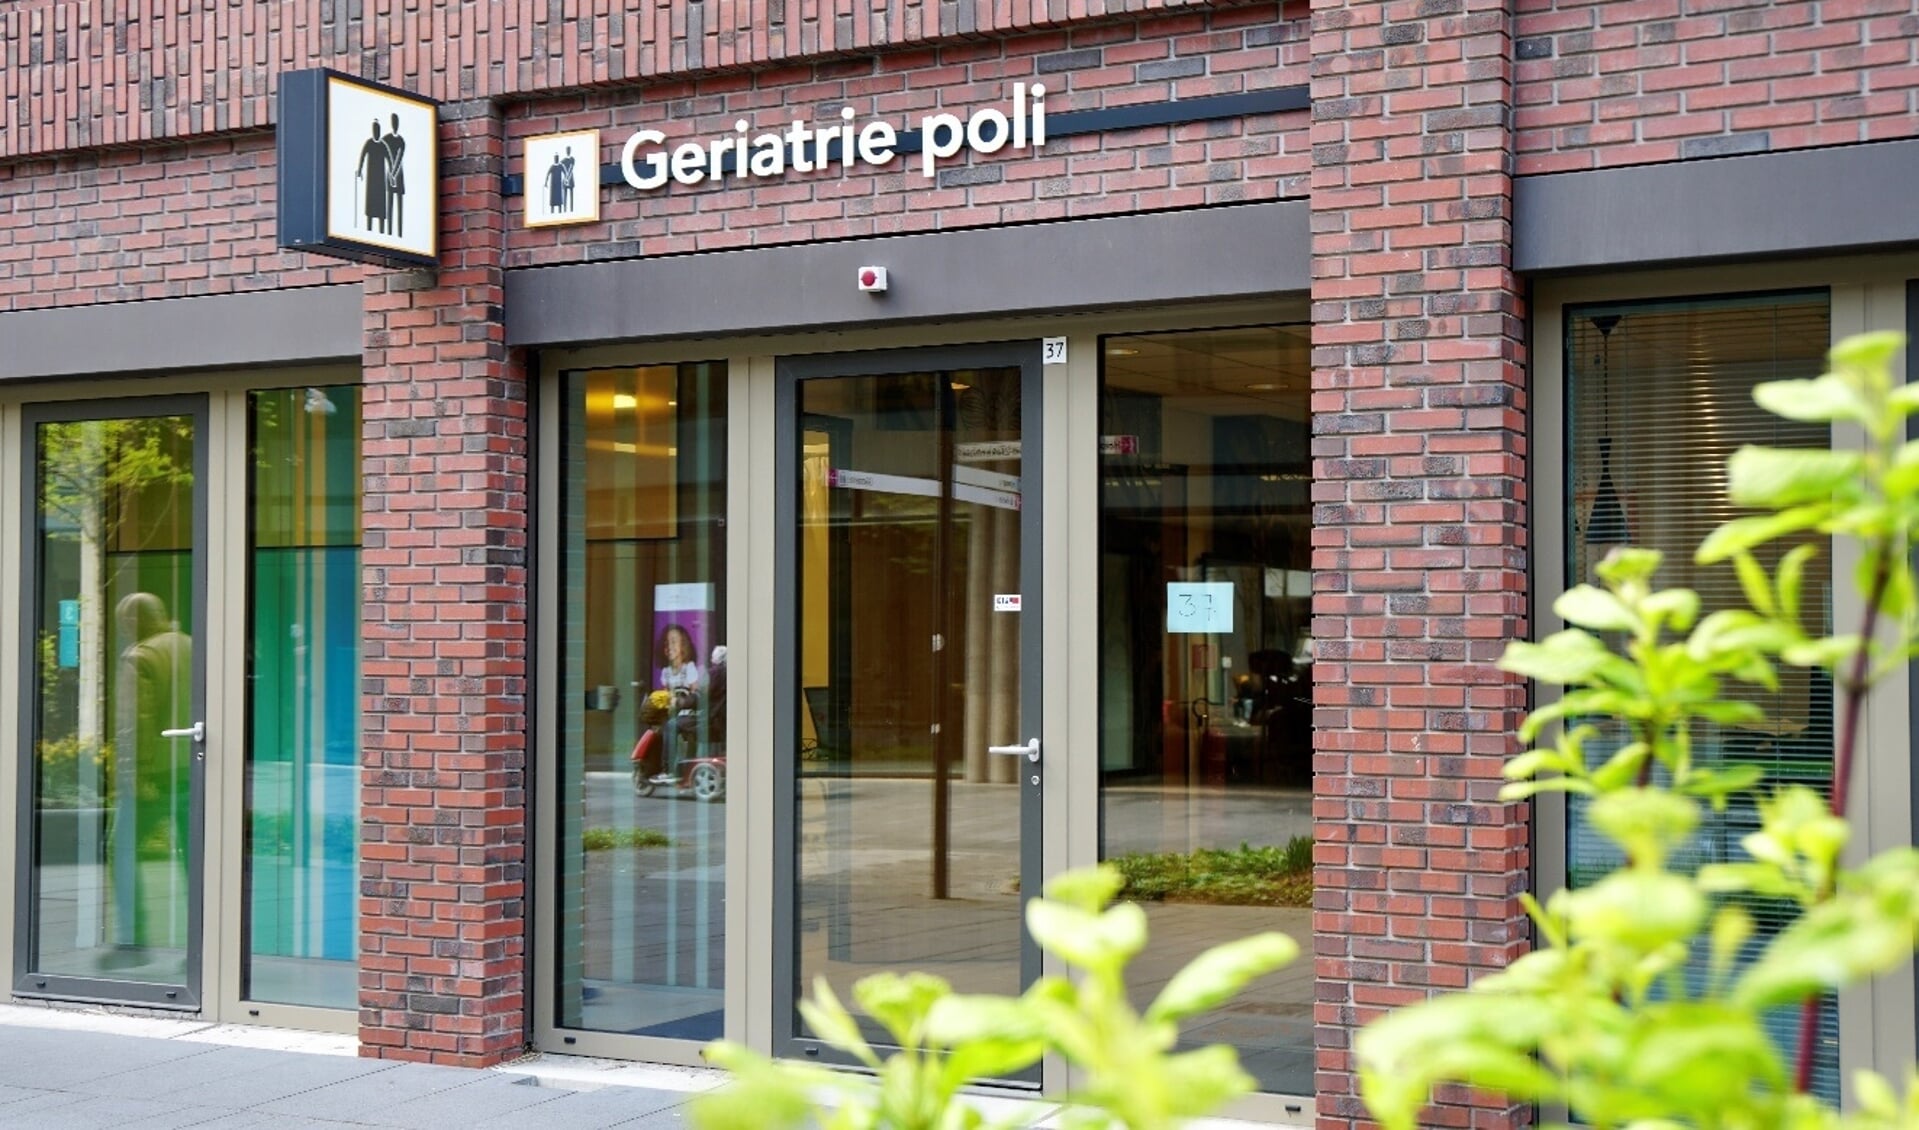 De Subacute Zorgstraat is gevestigd in de Geriatrie poli van het Maasstad Ziekenhuis. 